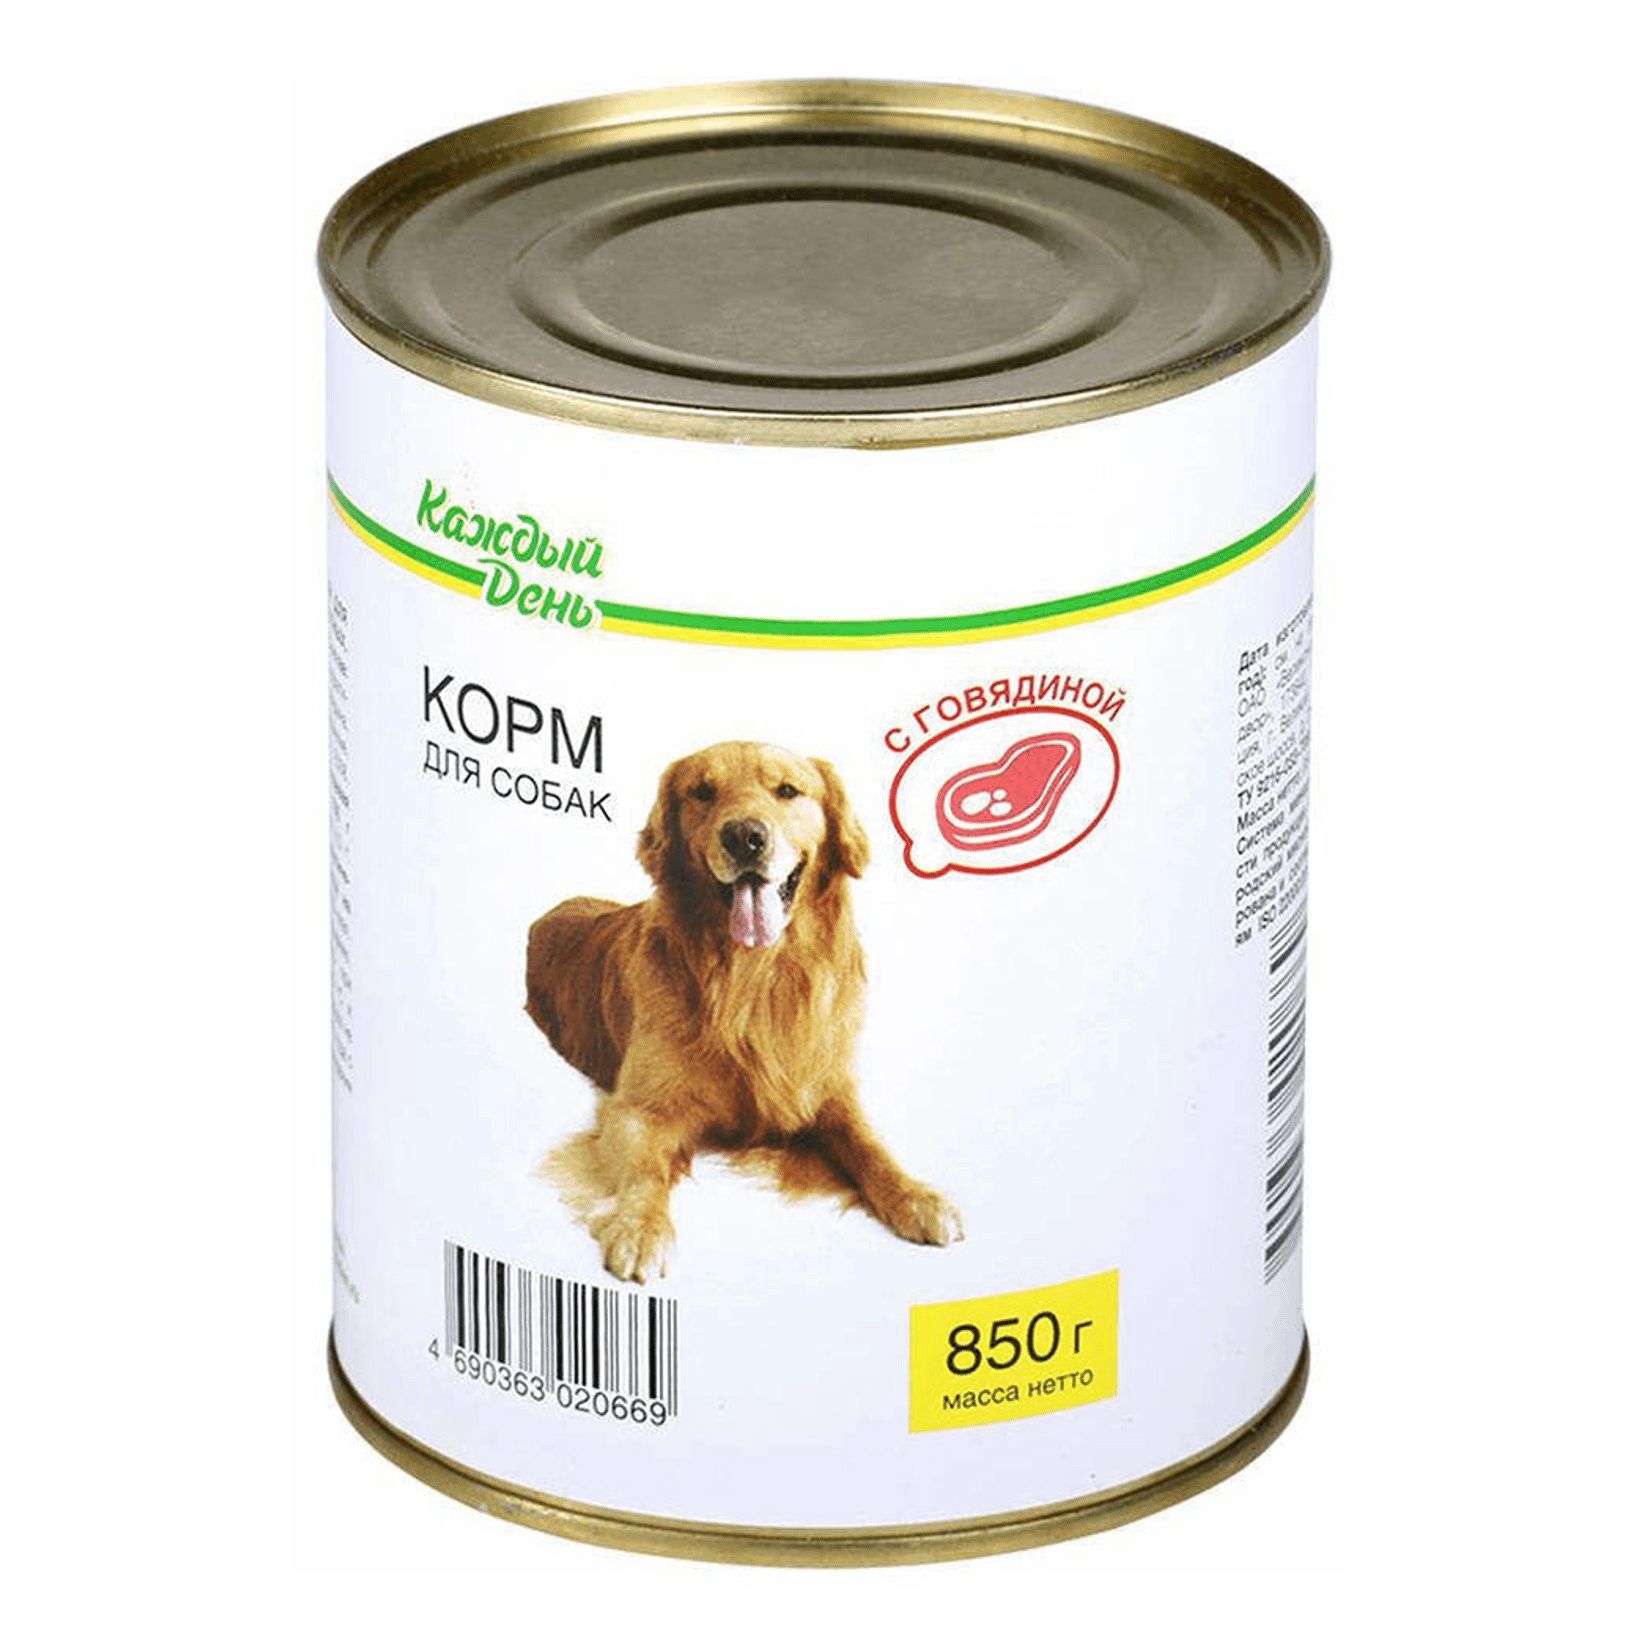 Корм для собак каждый день консервы для собак с говядиной (0.85 кг) 1 шт.. Корм для собак darsi (0.85 кг) 1 шт. Консервы для собак: говядина и рис. Корм для собак Rocky (0.25 кг) 1 шт. Паштет с говядиной для собак. Корм для собак Aras (0.82 кг) 1 шт. Premium select для собак - говядина с овощами и рисом. Корм для собак челябинск